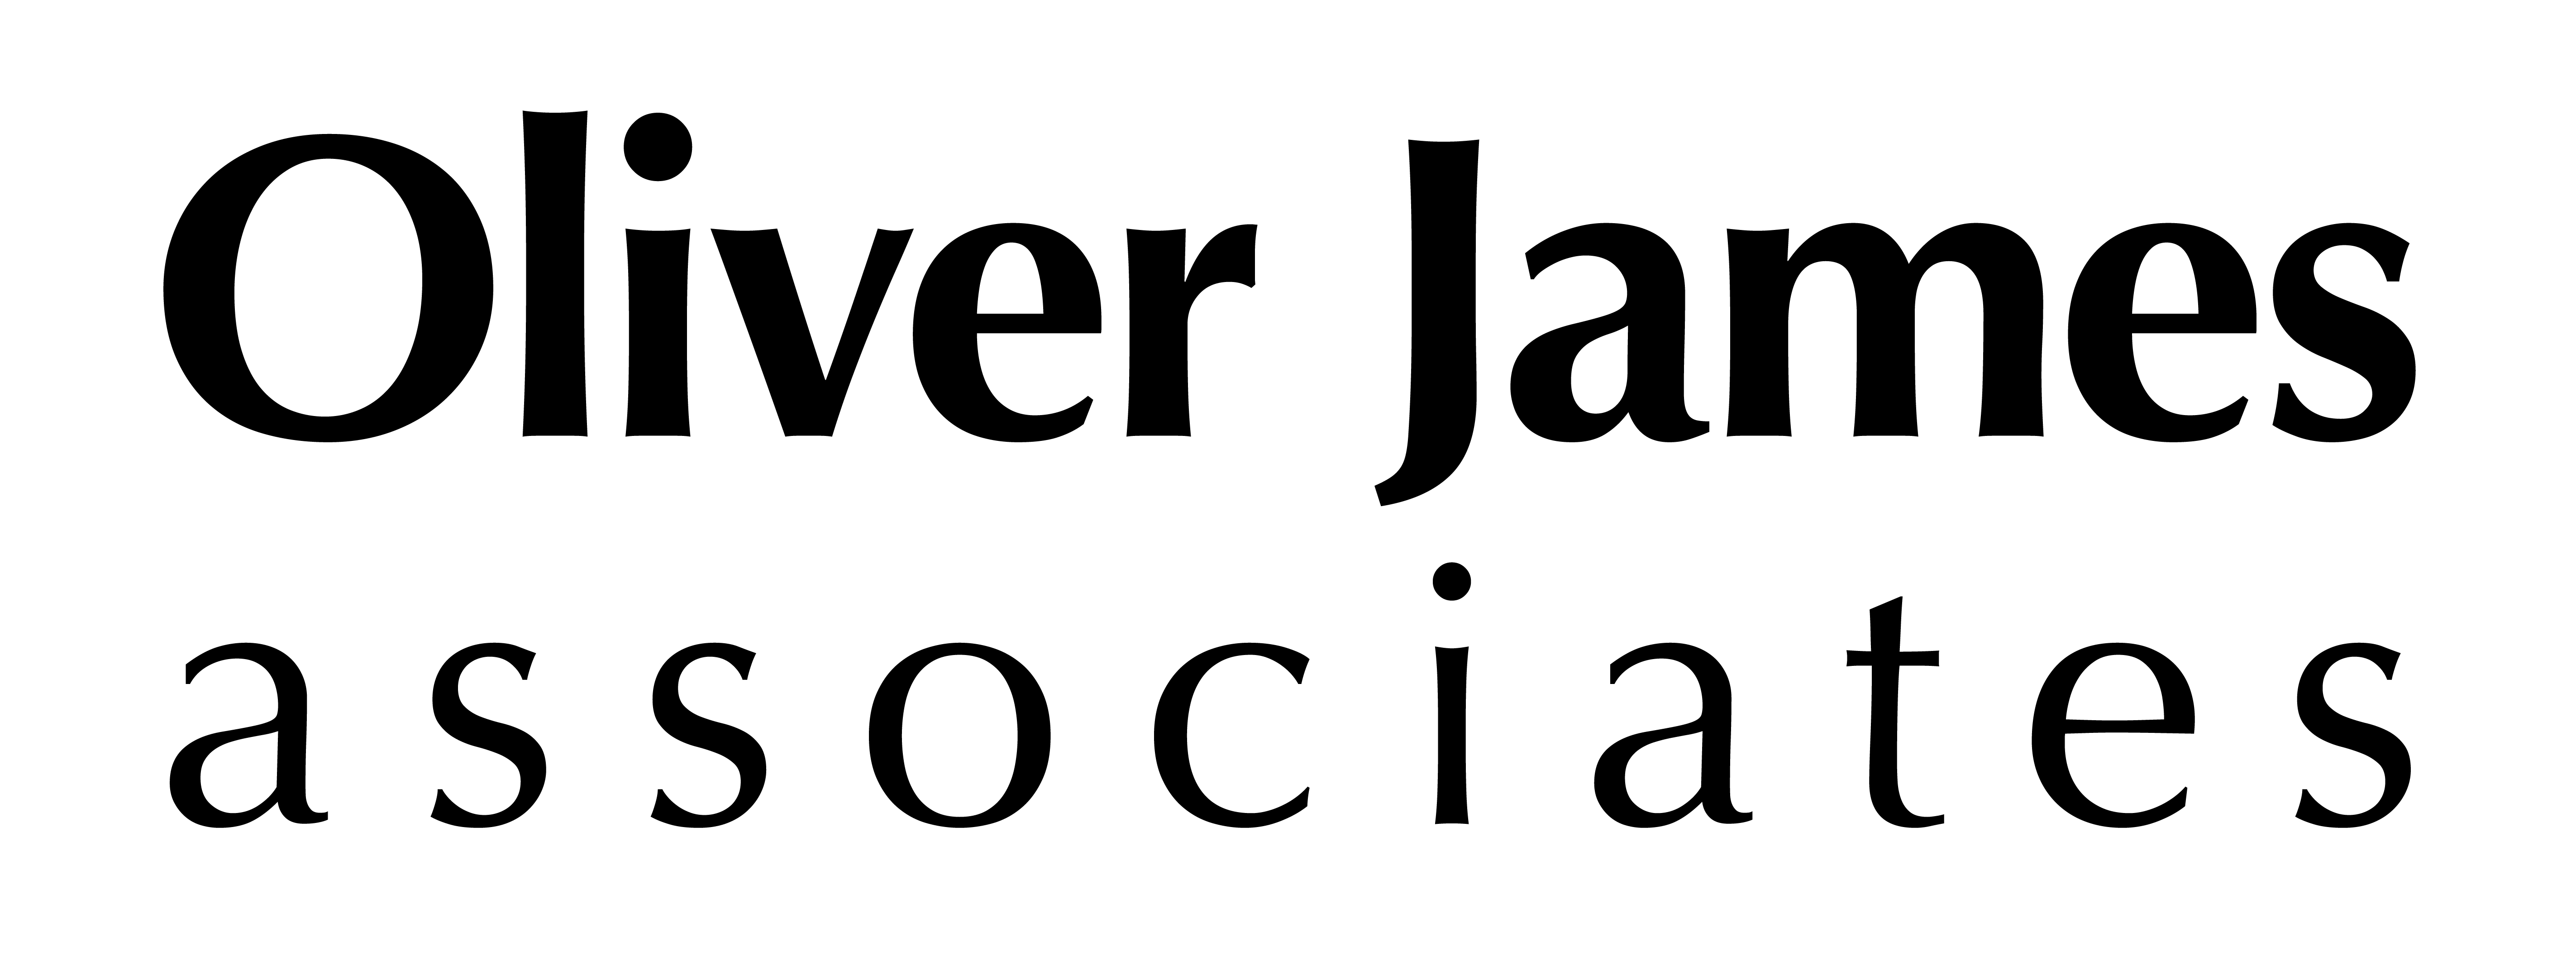 Oliver James associates